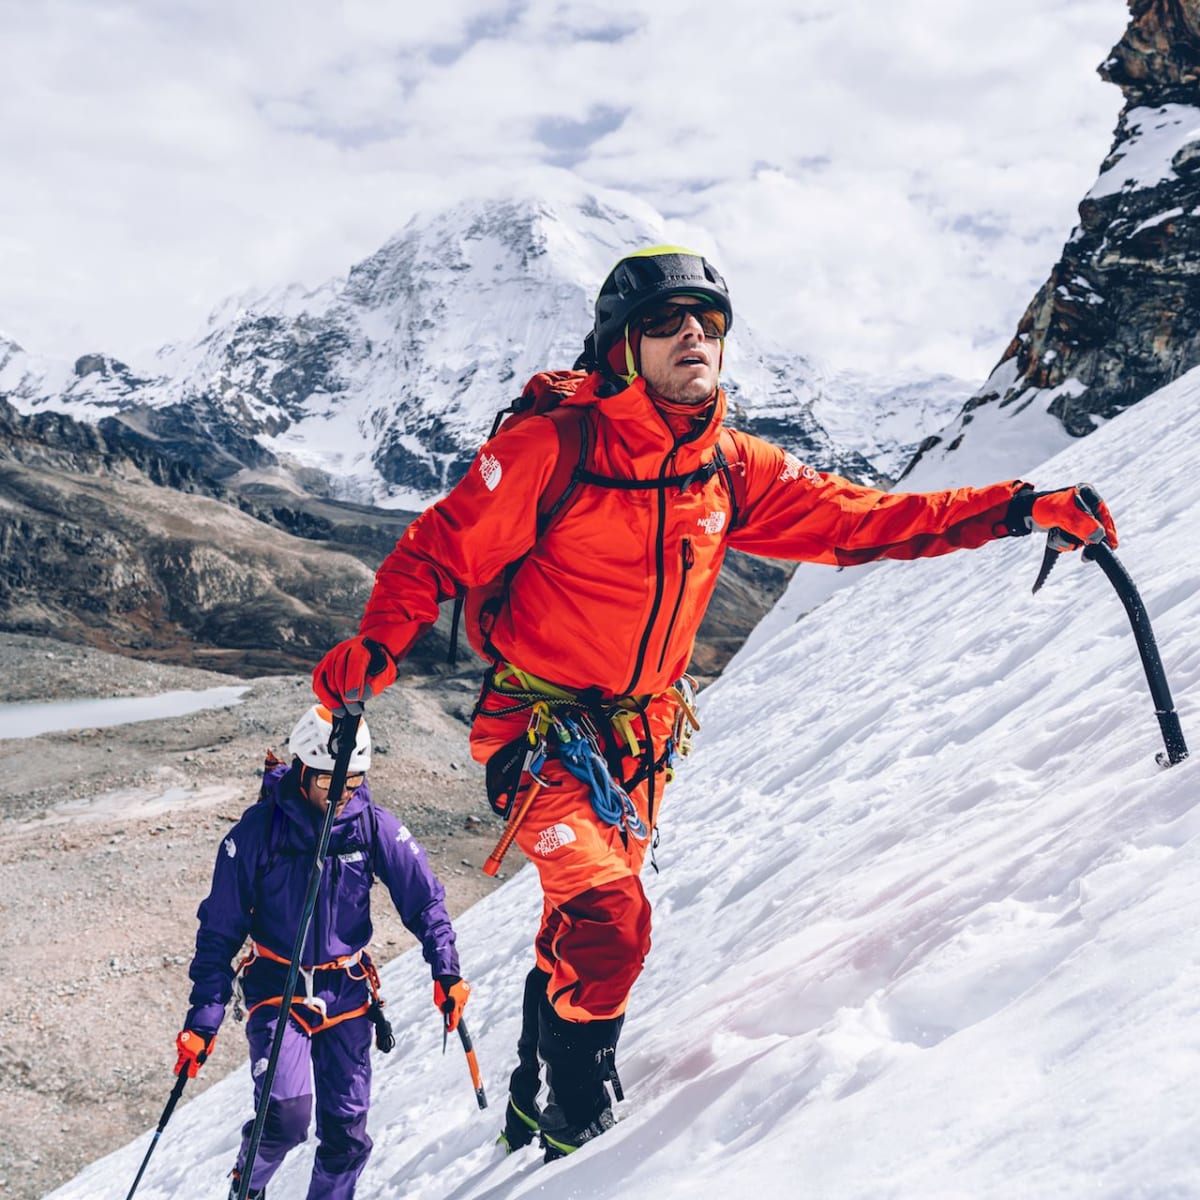 The North Face Summit Series AMK Advanced Mountain Kit FUTURELIGHT